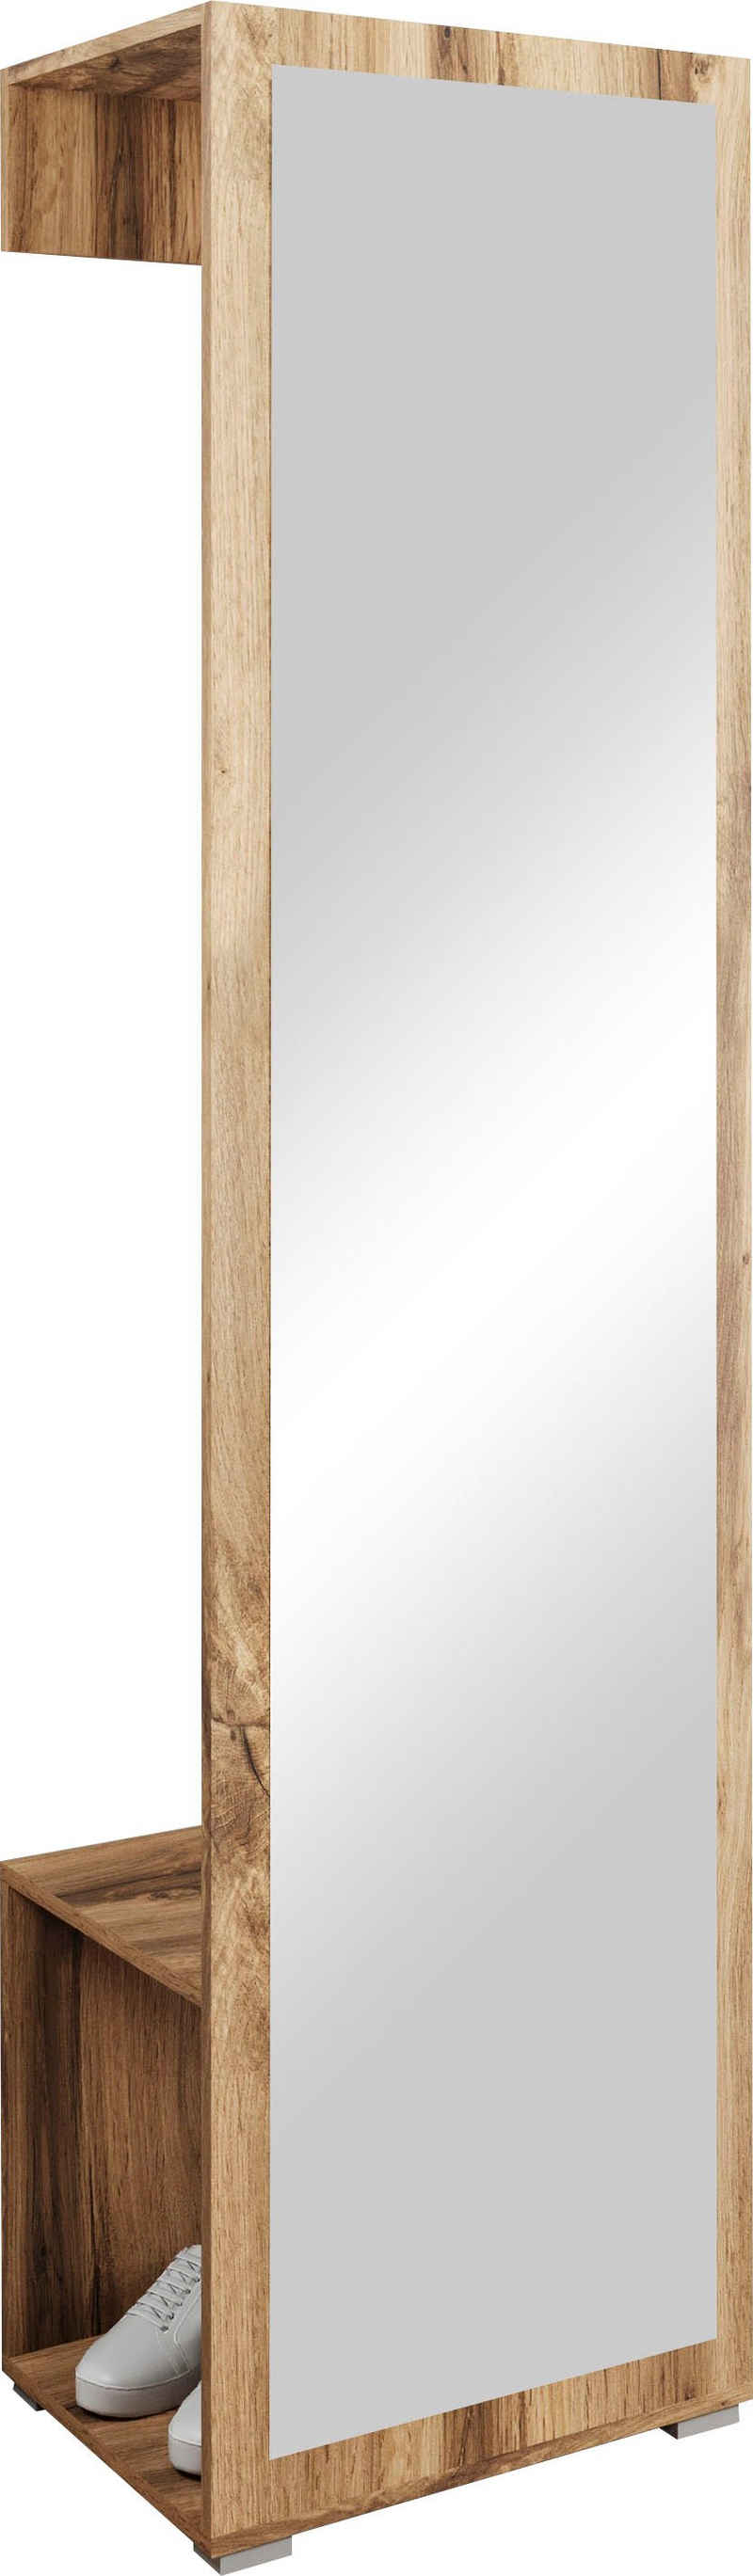 INOSIGN Spiegelschrank Paris mit 1 Kleiderstange und 1 Frontspiegel (Höhe 190 cm)